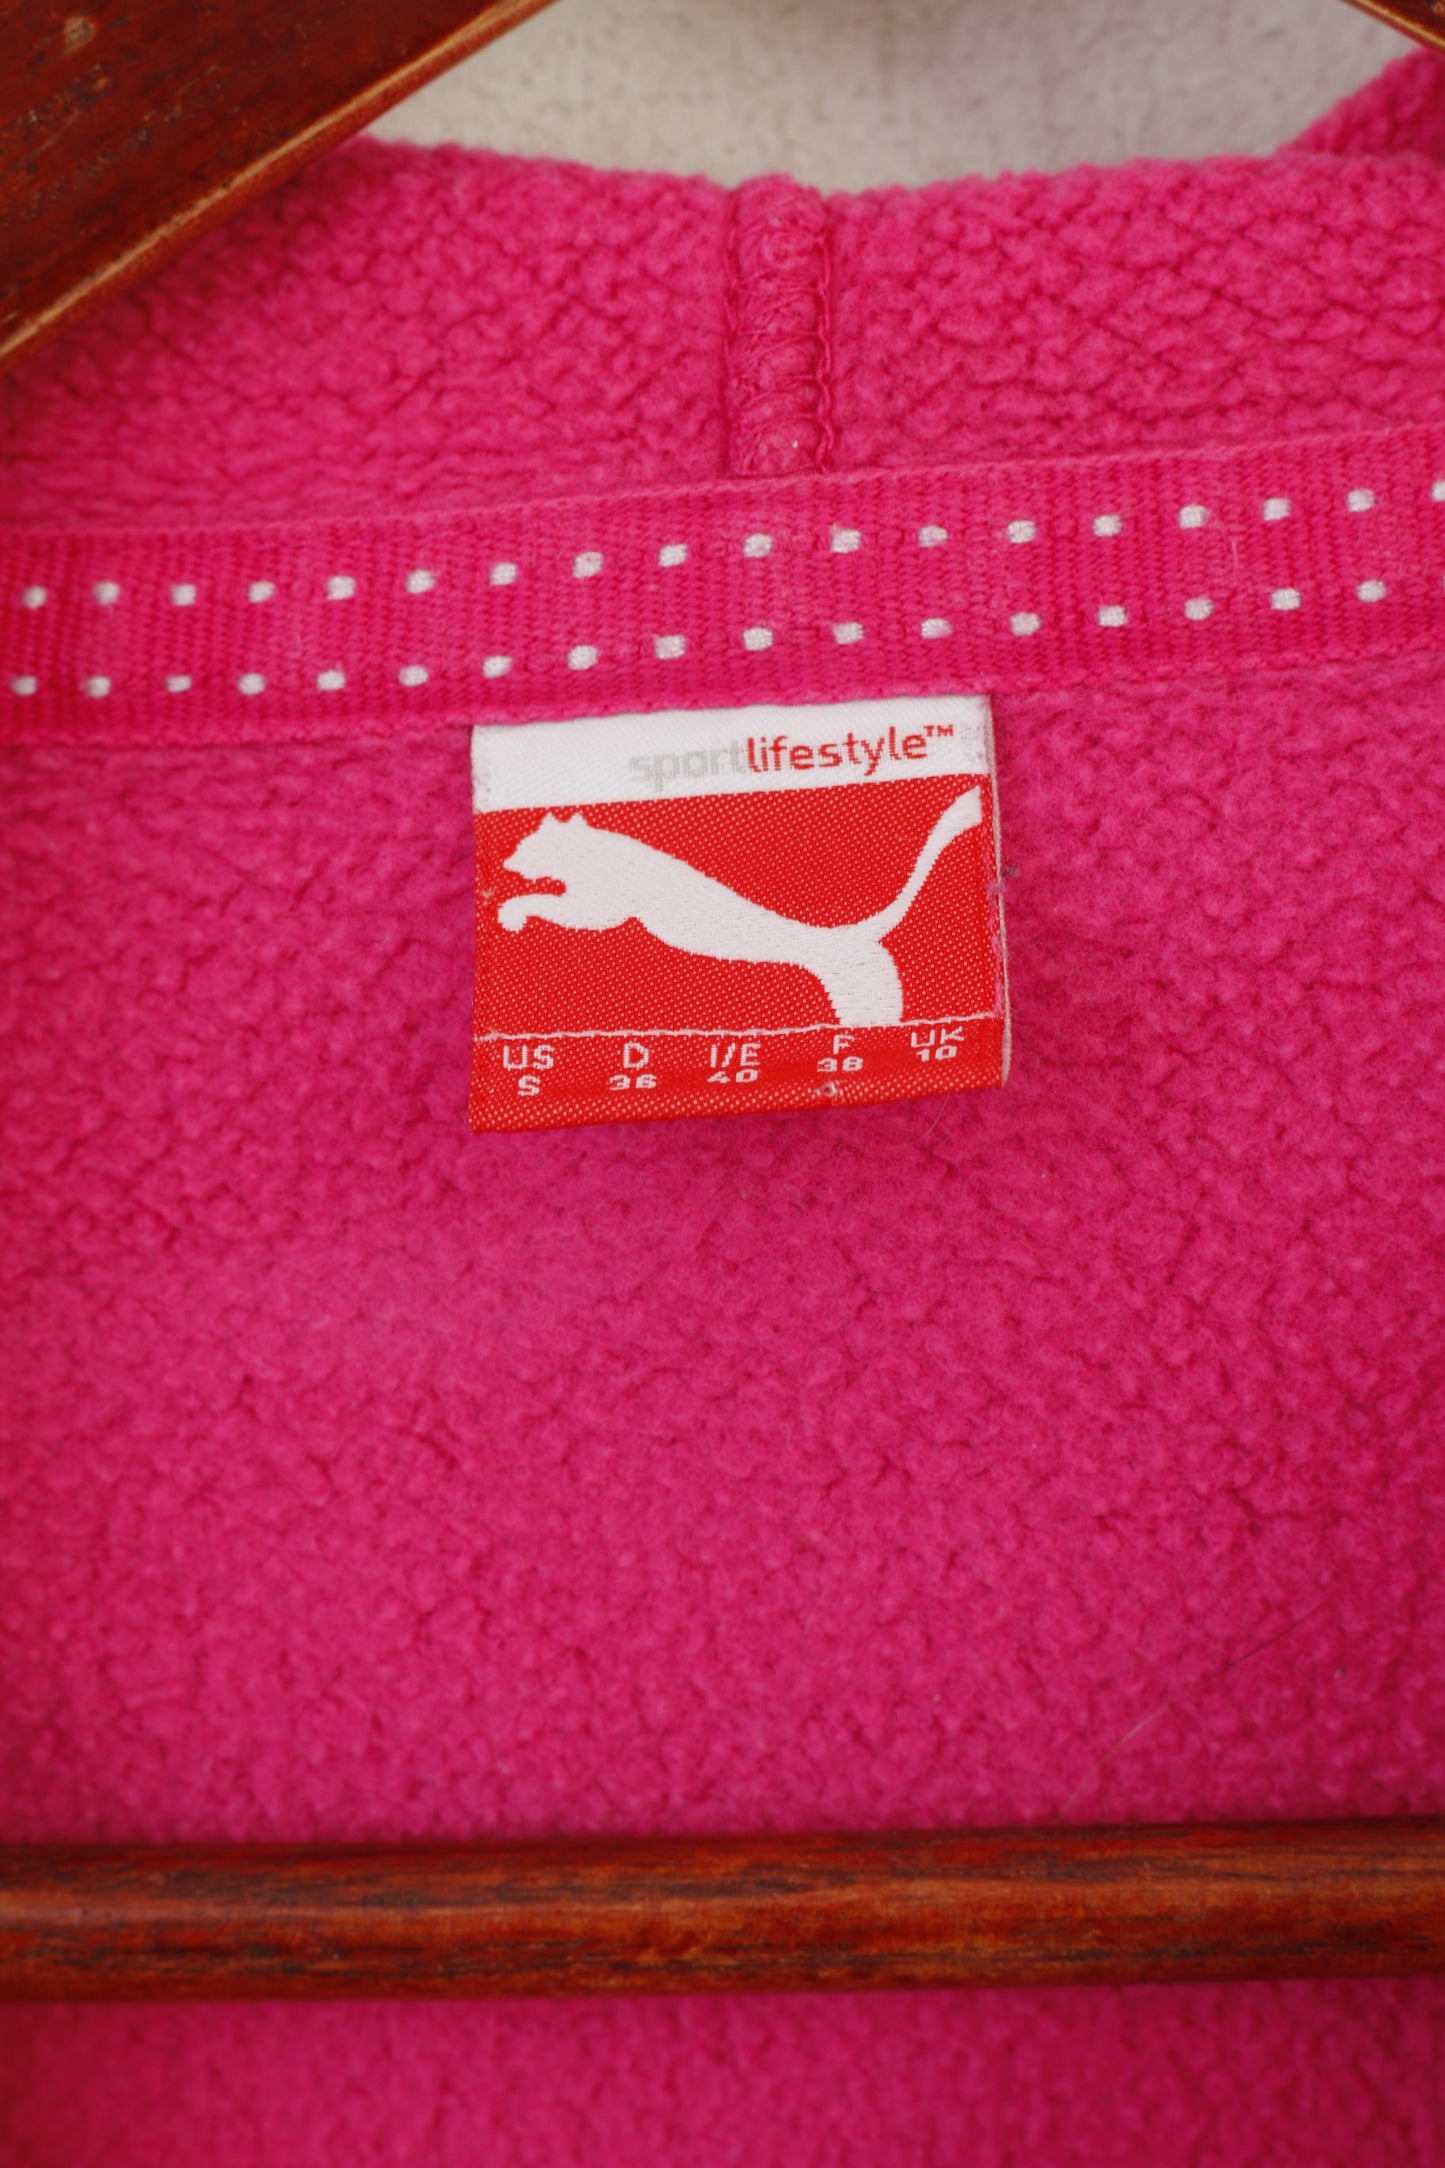 Puma Women S Sweatshirt Pink Cotton Hooded Sportswear Training Sport Top